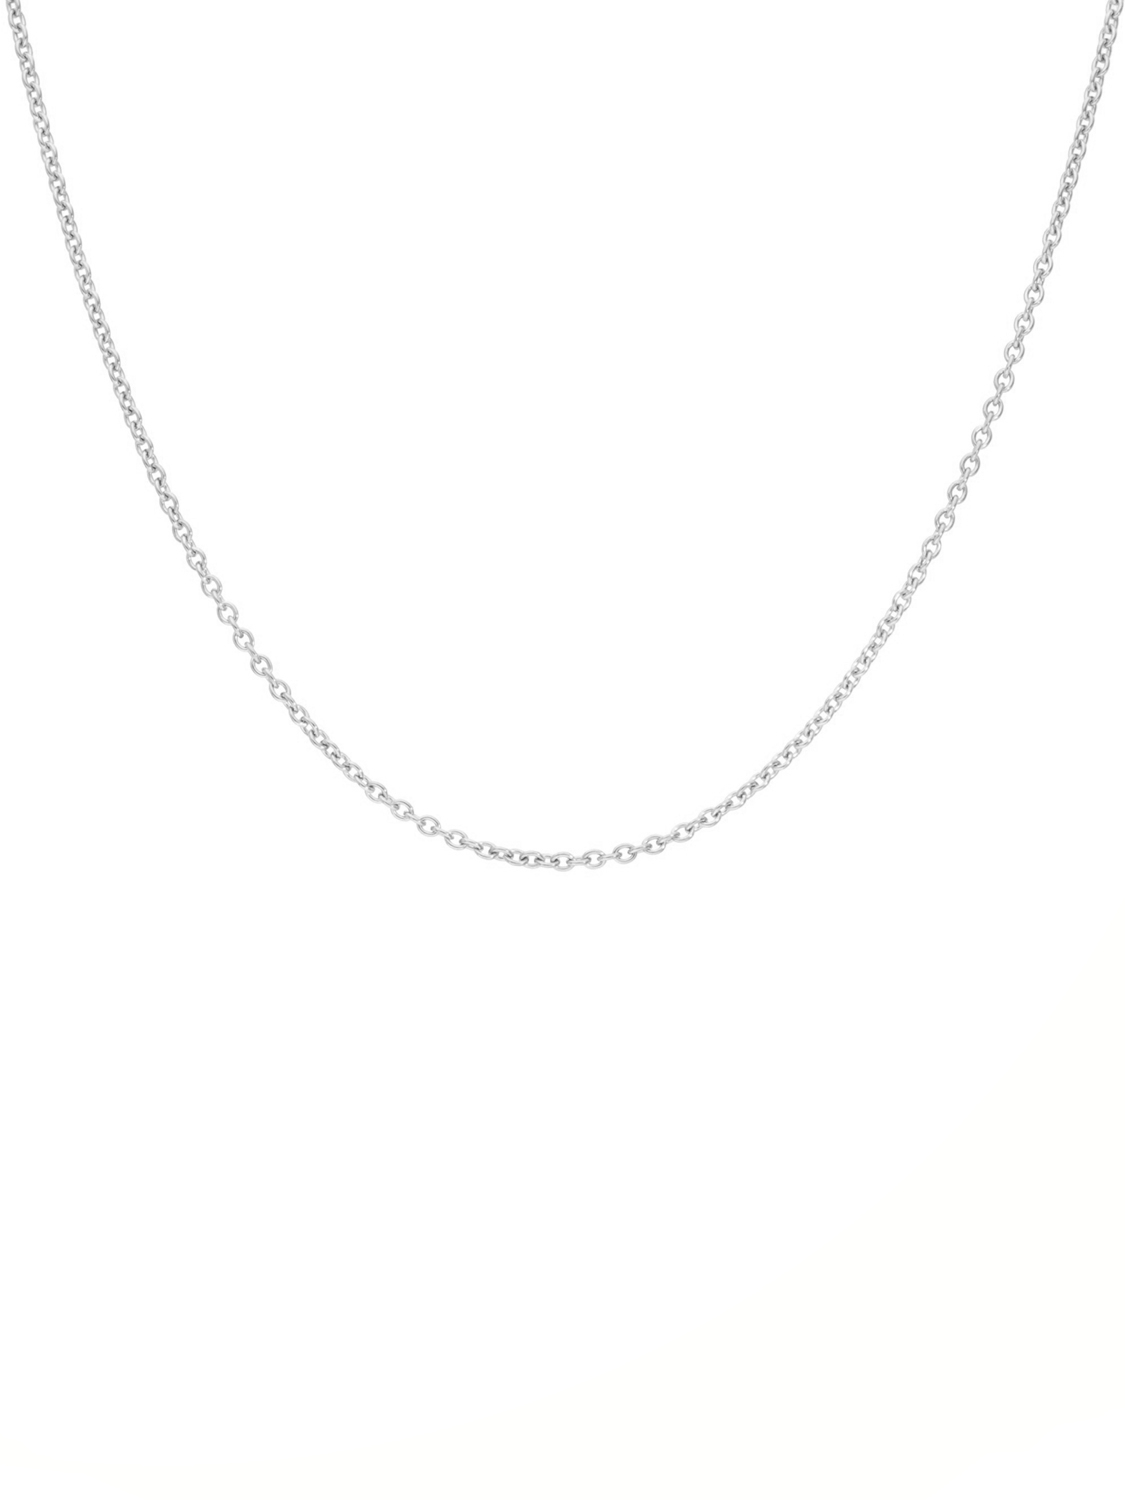 Kordoubt - Halskette Goldkette Weißgold 333 ODER 585 - Breite 1,5 mm